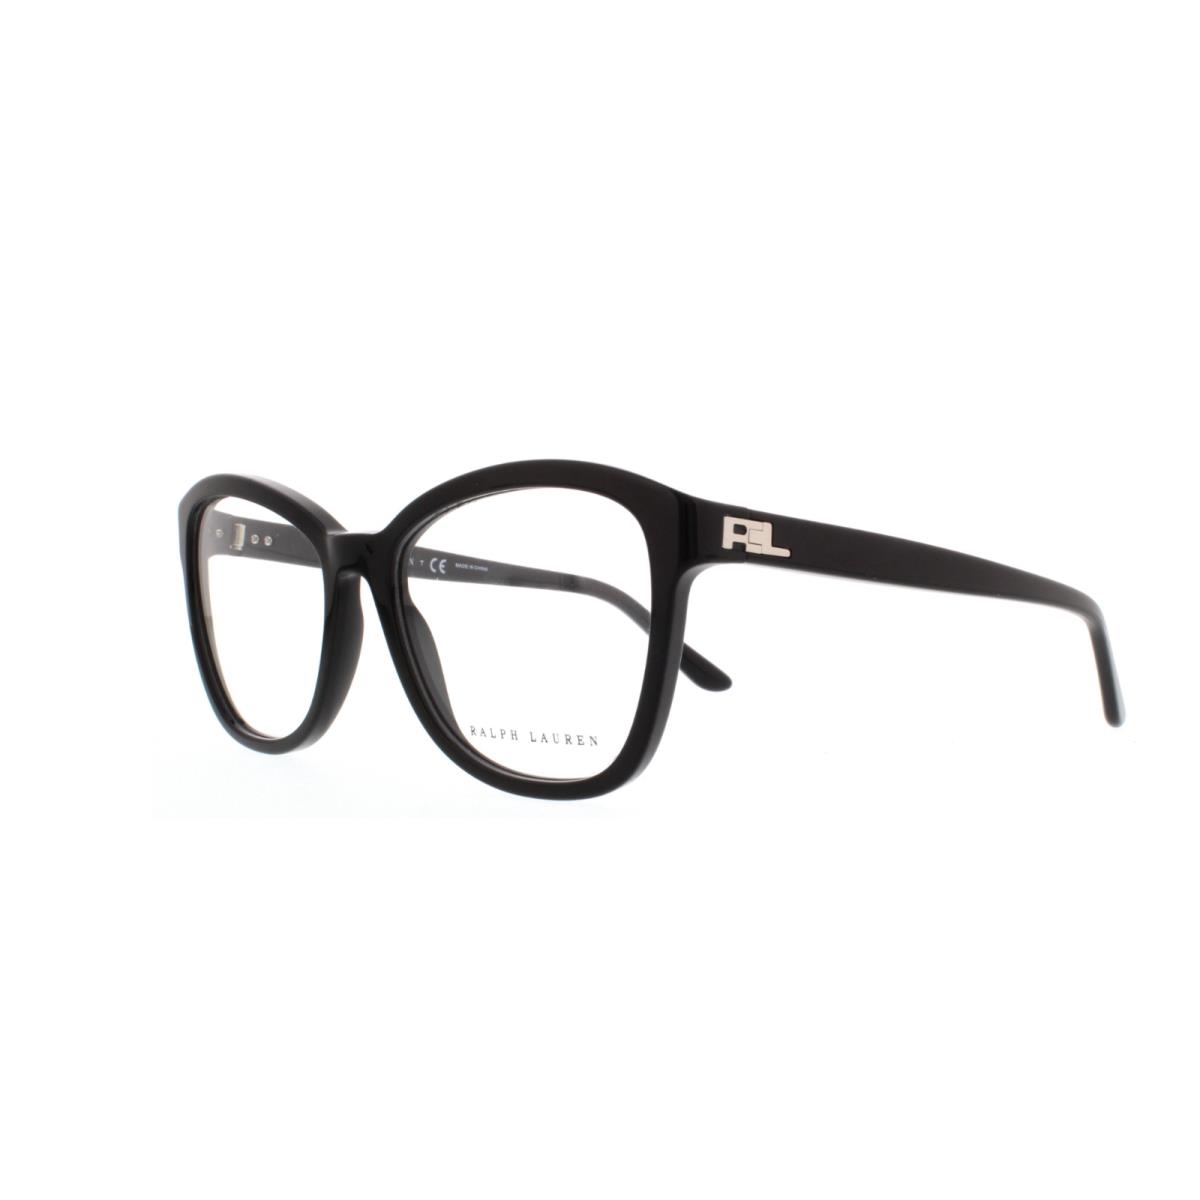 Polo Ralph Lauren RL 6142 5001 Black Eyeglasses 51-17-140 MM